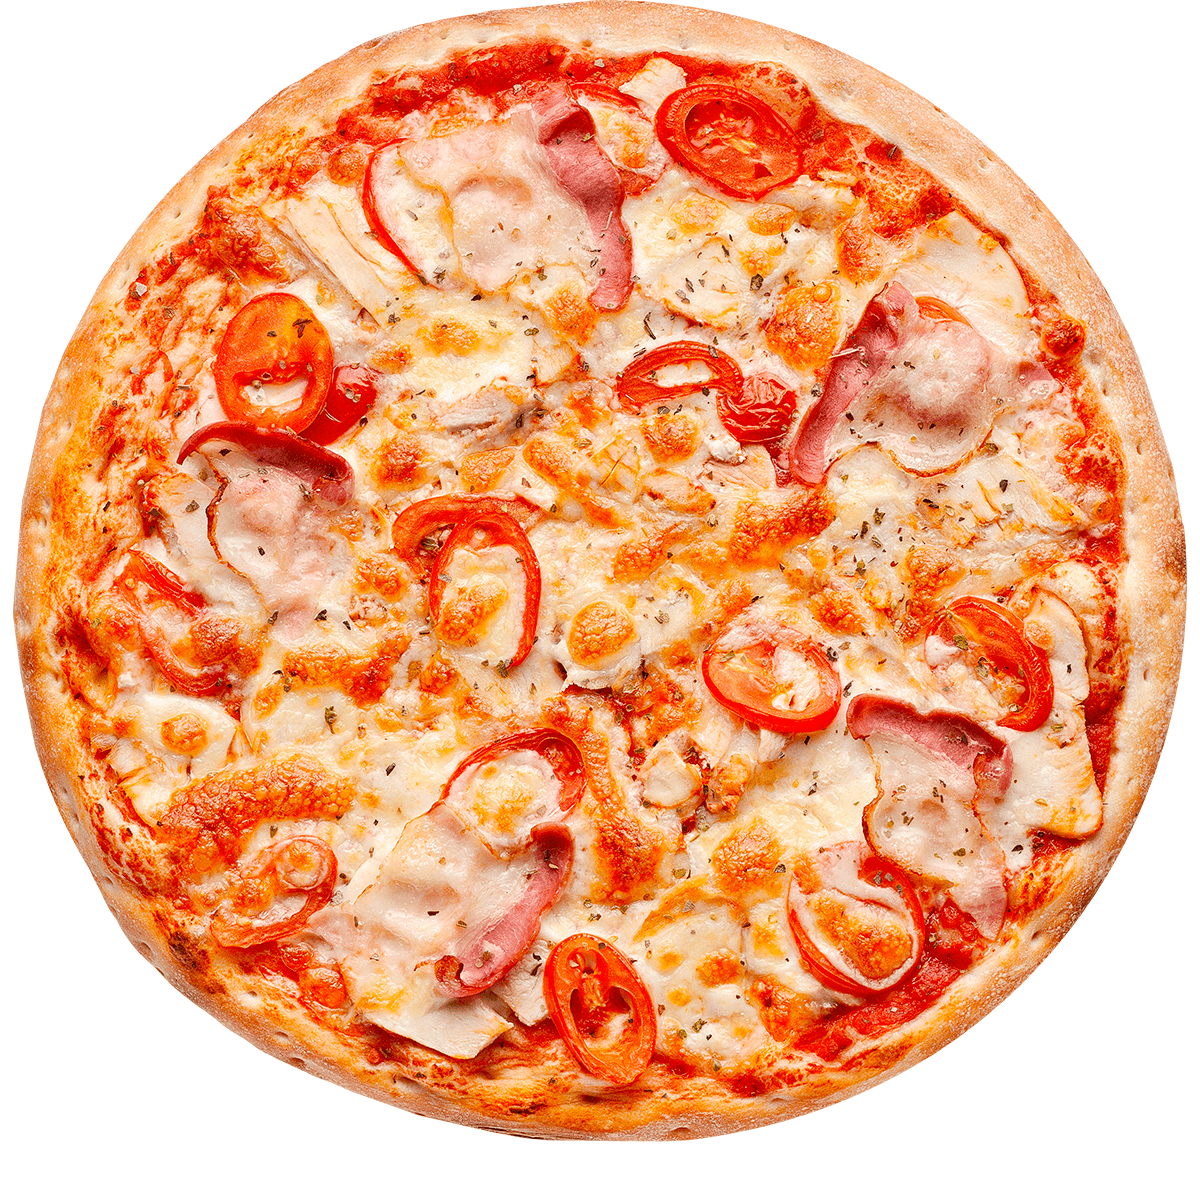 роман хочет заказать пиццу с двумя разными дополнительными начинками для пиццы фото 98